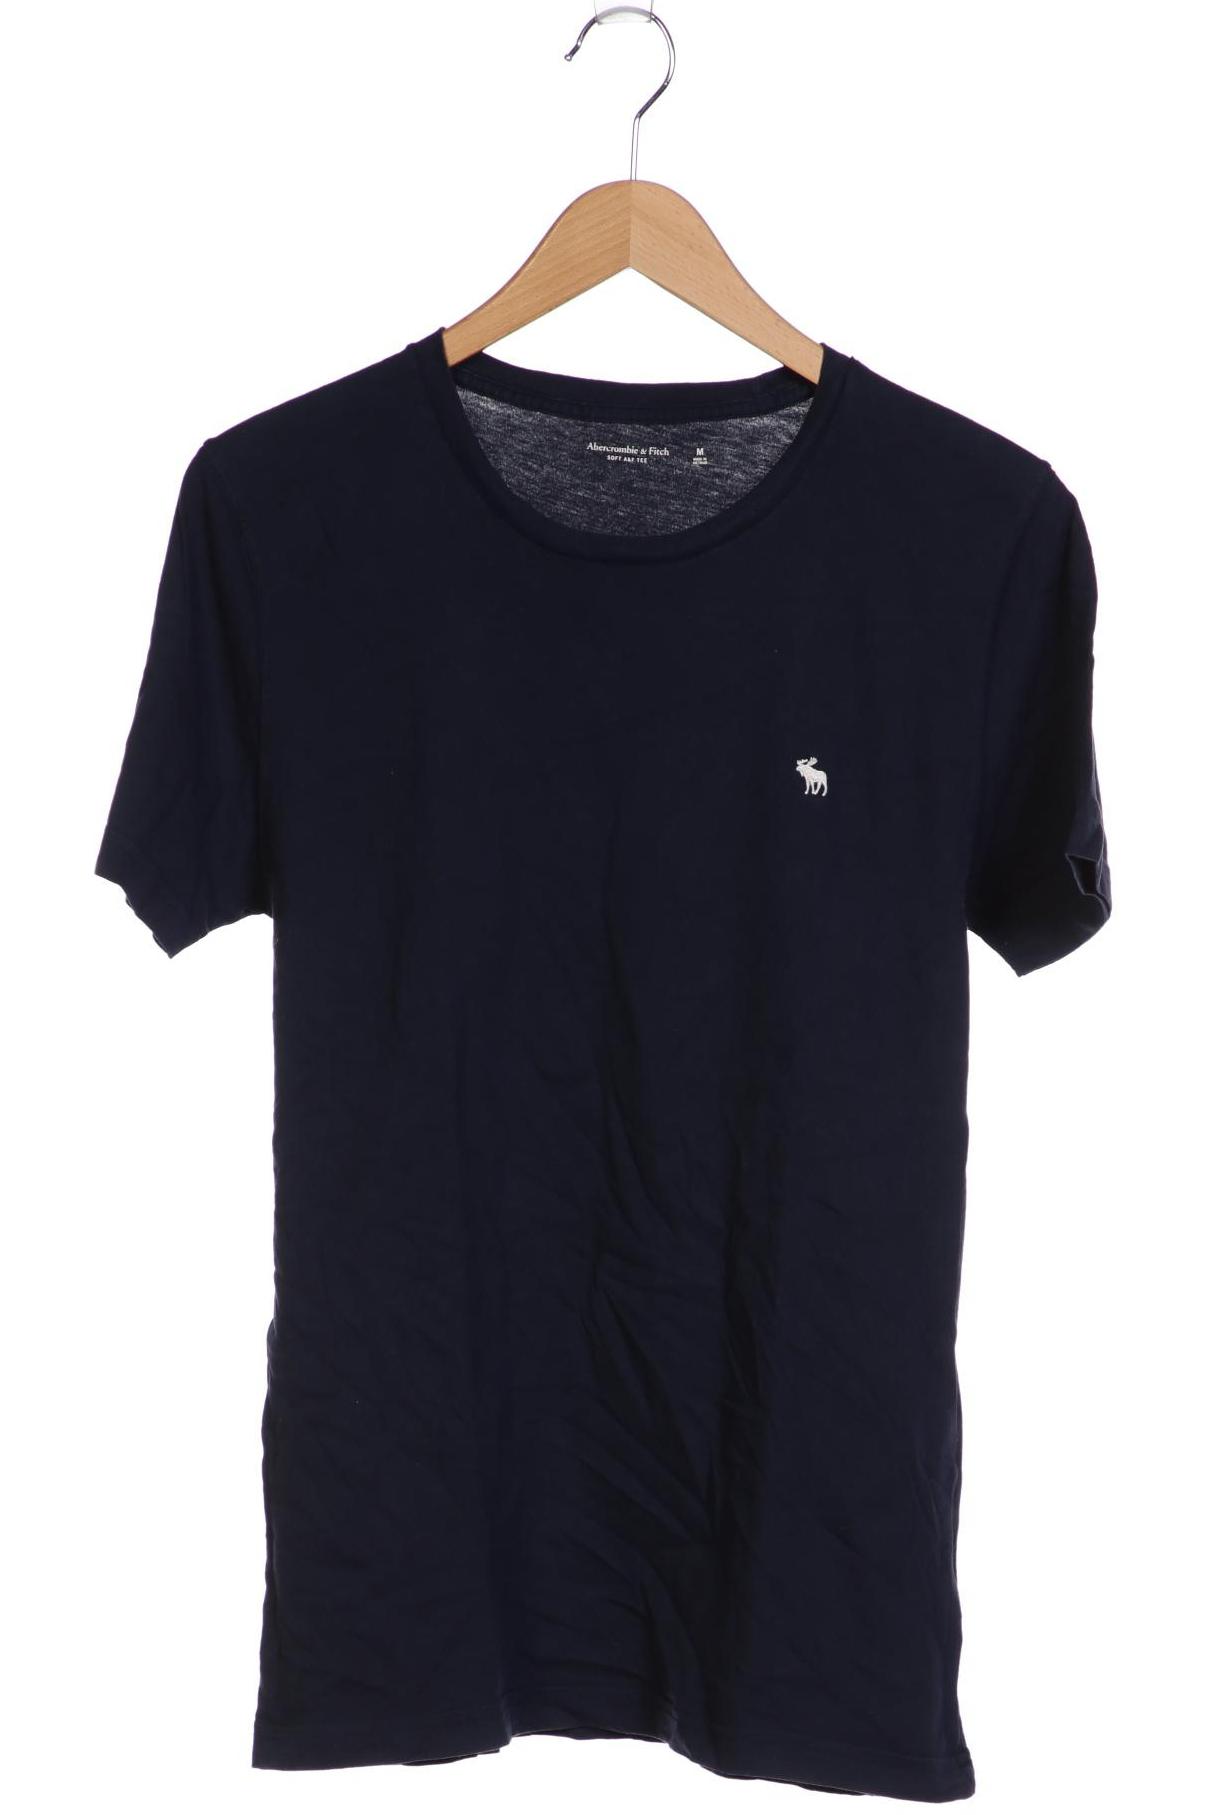 Abercrombie & Fitch Herren T-Shirt, marineblau von Abercrombie & Fitch